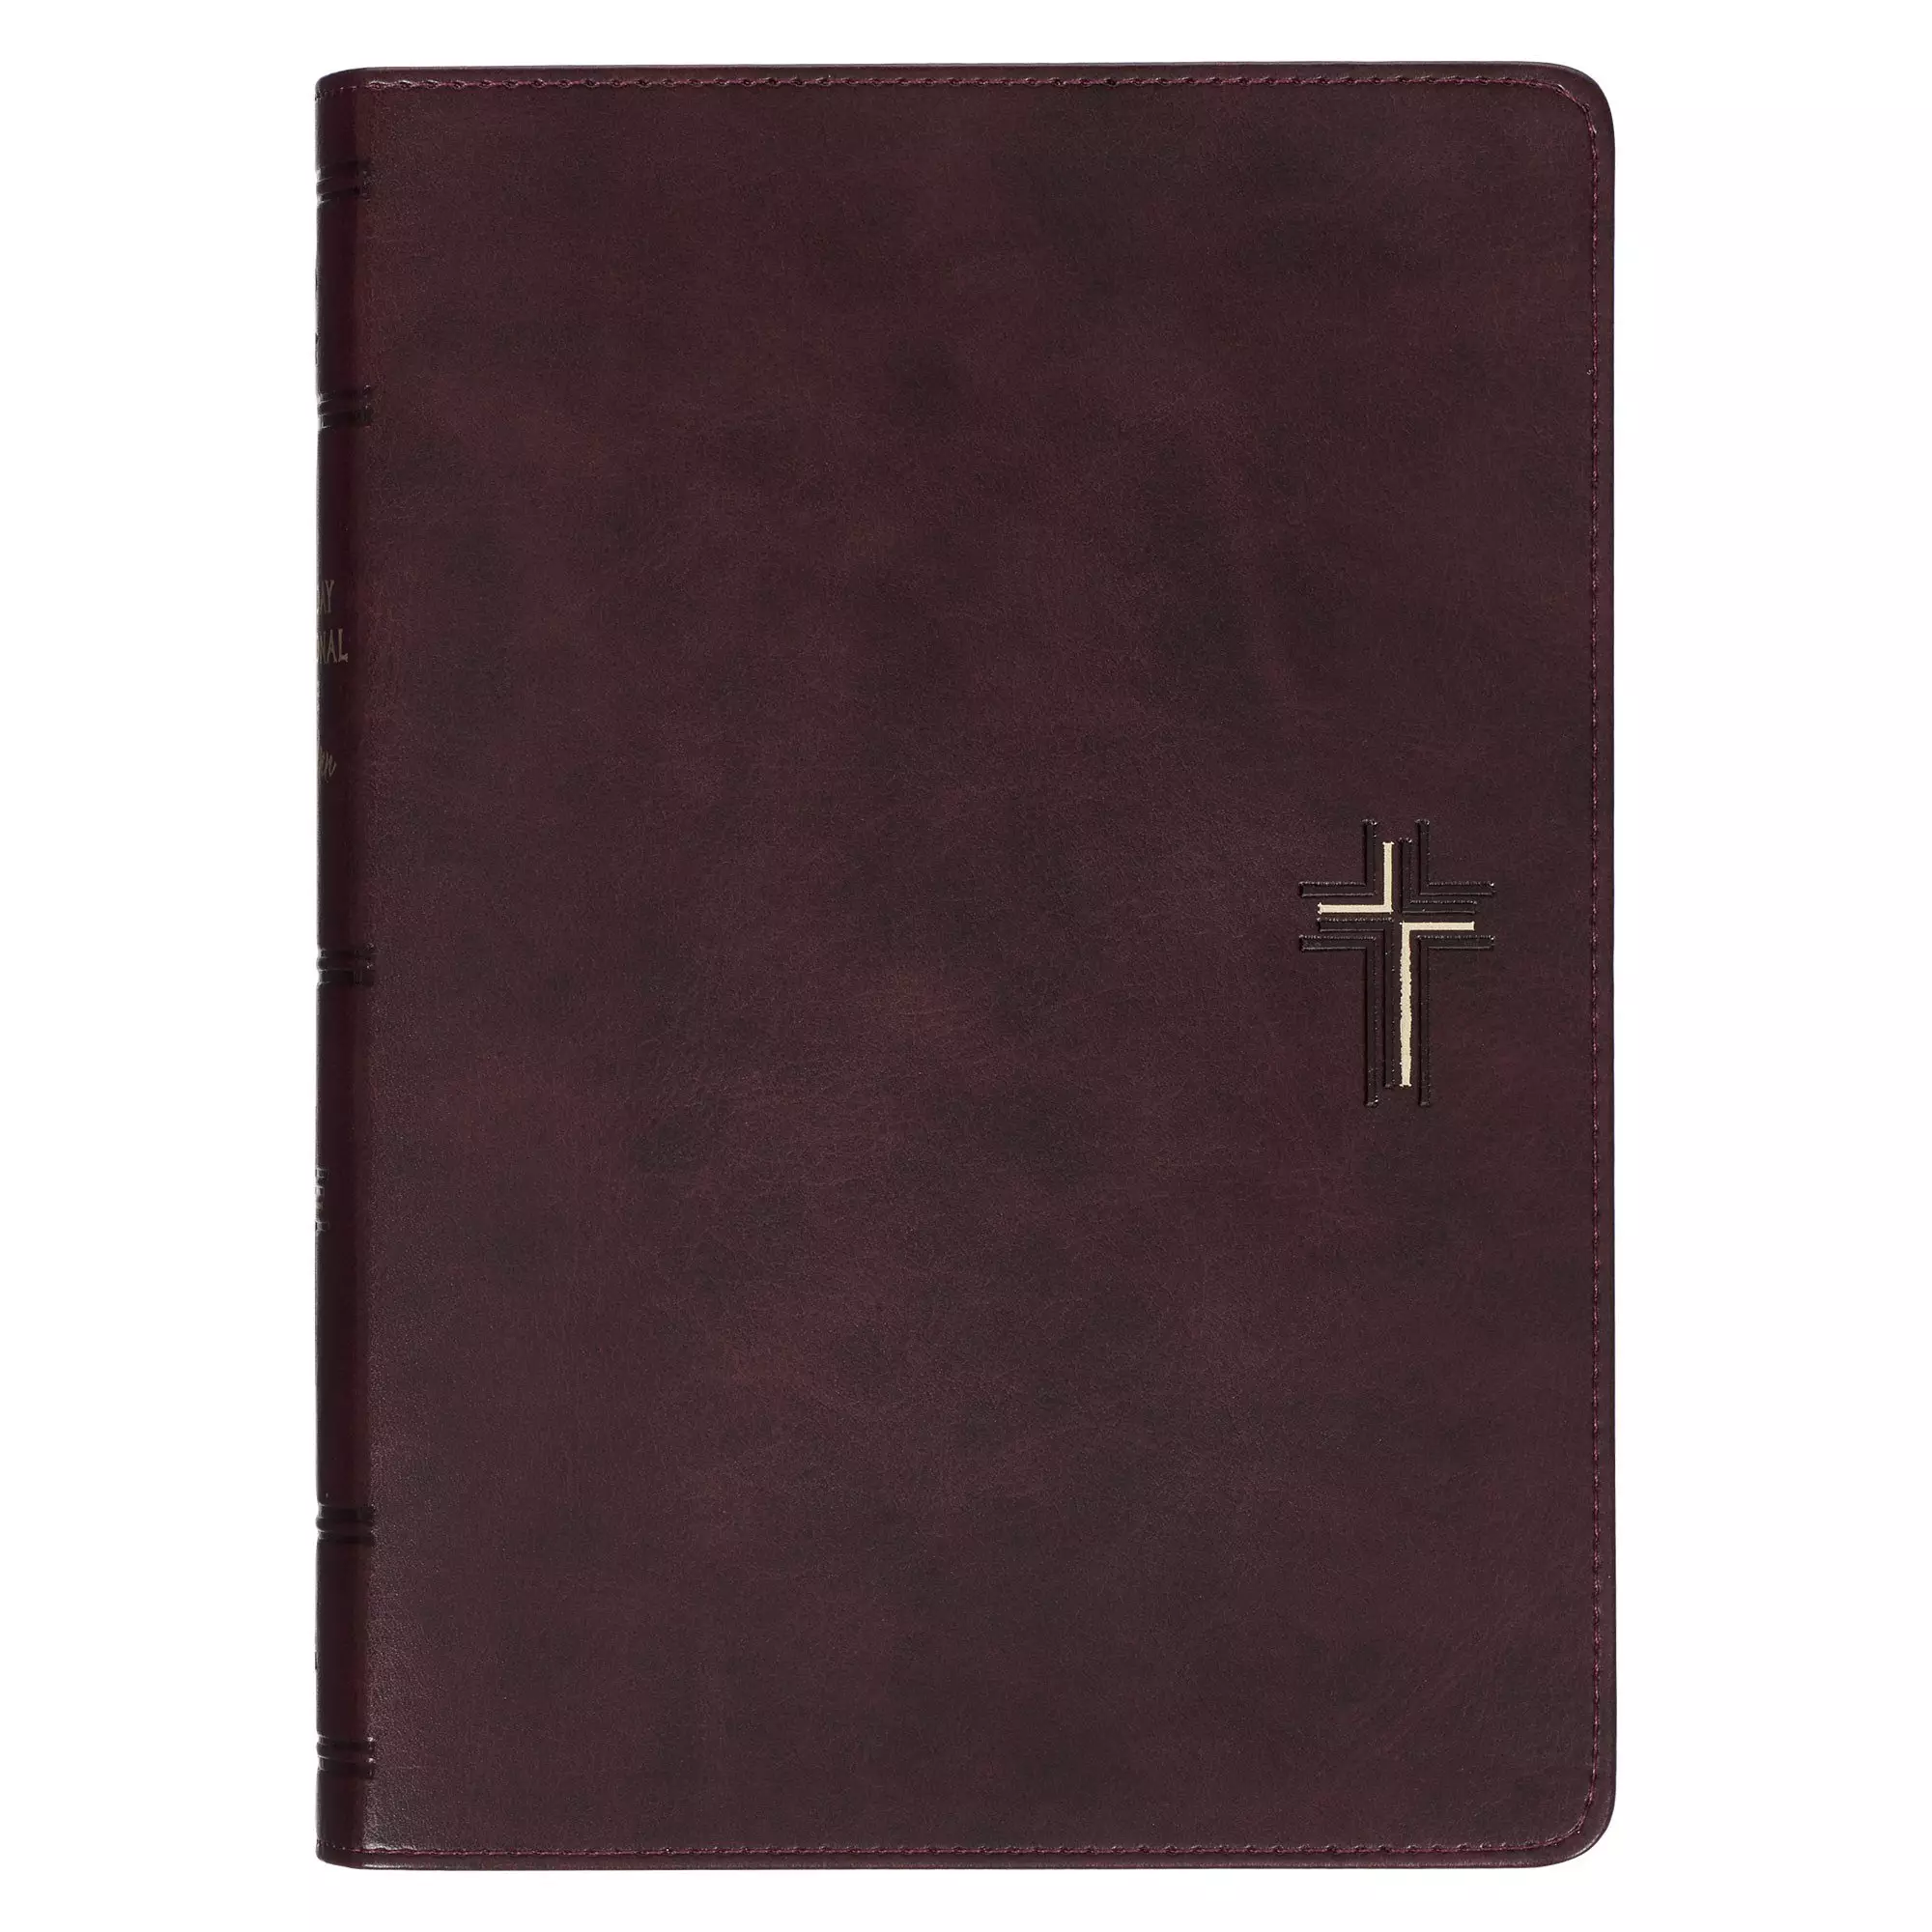 Devotional Bible NLT for Men Faux Leather, Walnut Brown Cross